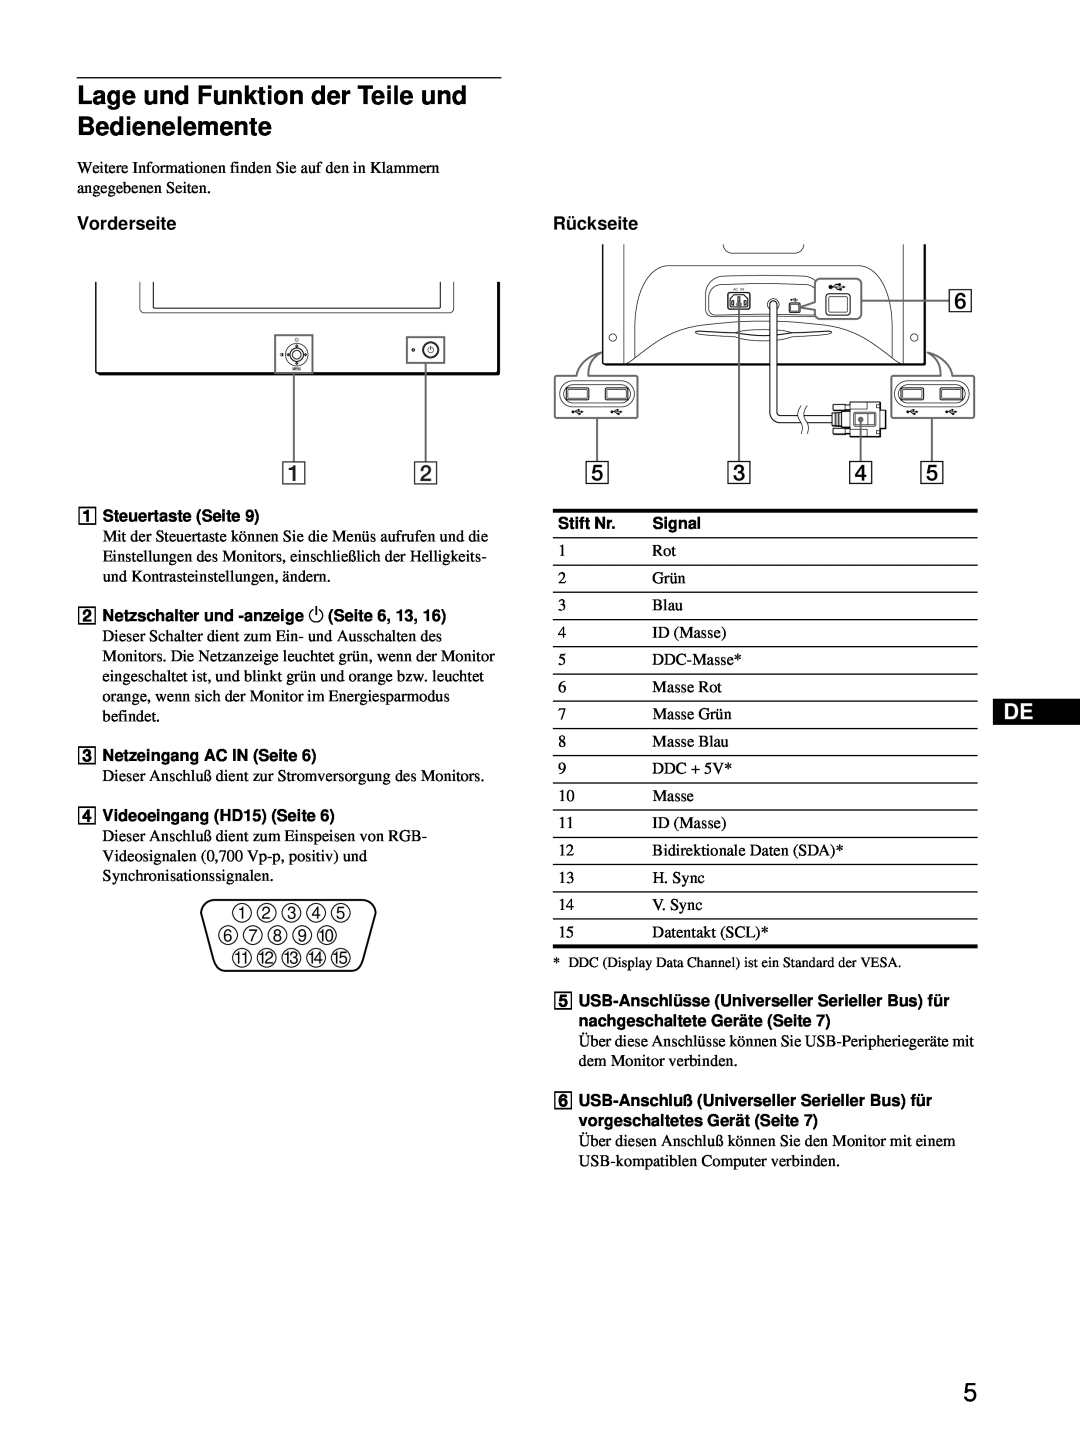 Sony HMD-A220 operating instructions Lage und Funktion der Teile und Bedienelemente, Vorderseite 